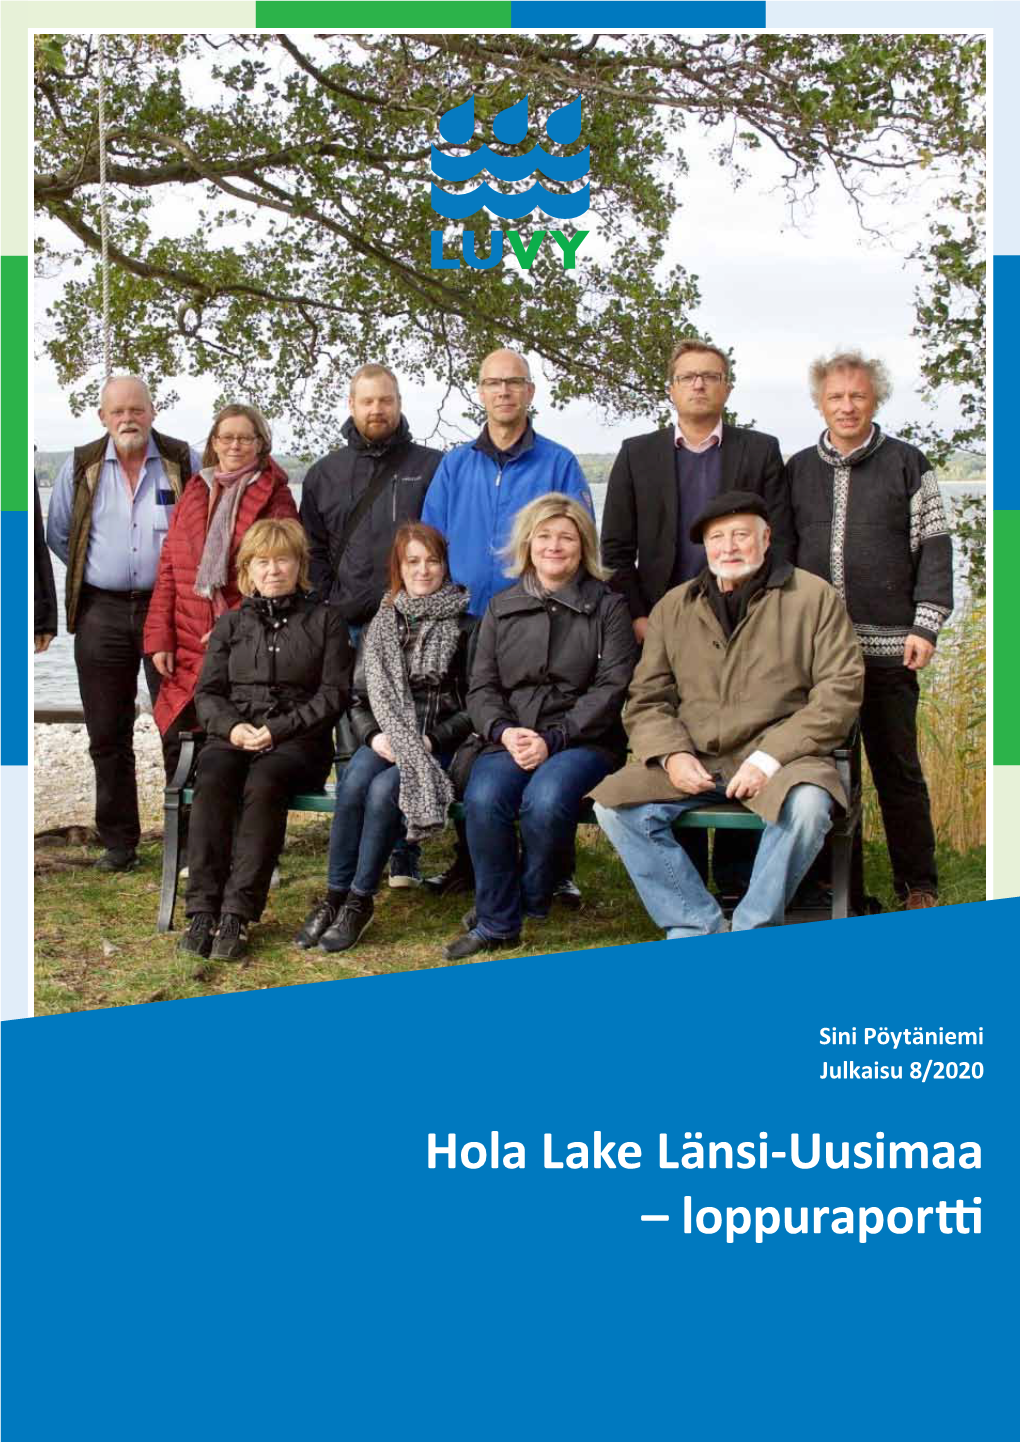 Hola Lake Länsi-Uusimaa – Loppuraportti Länsi-Uudenmaan Vesi Ja Ympäristö Ry Julkaisu 8/2020